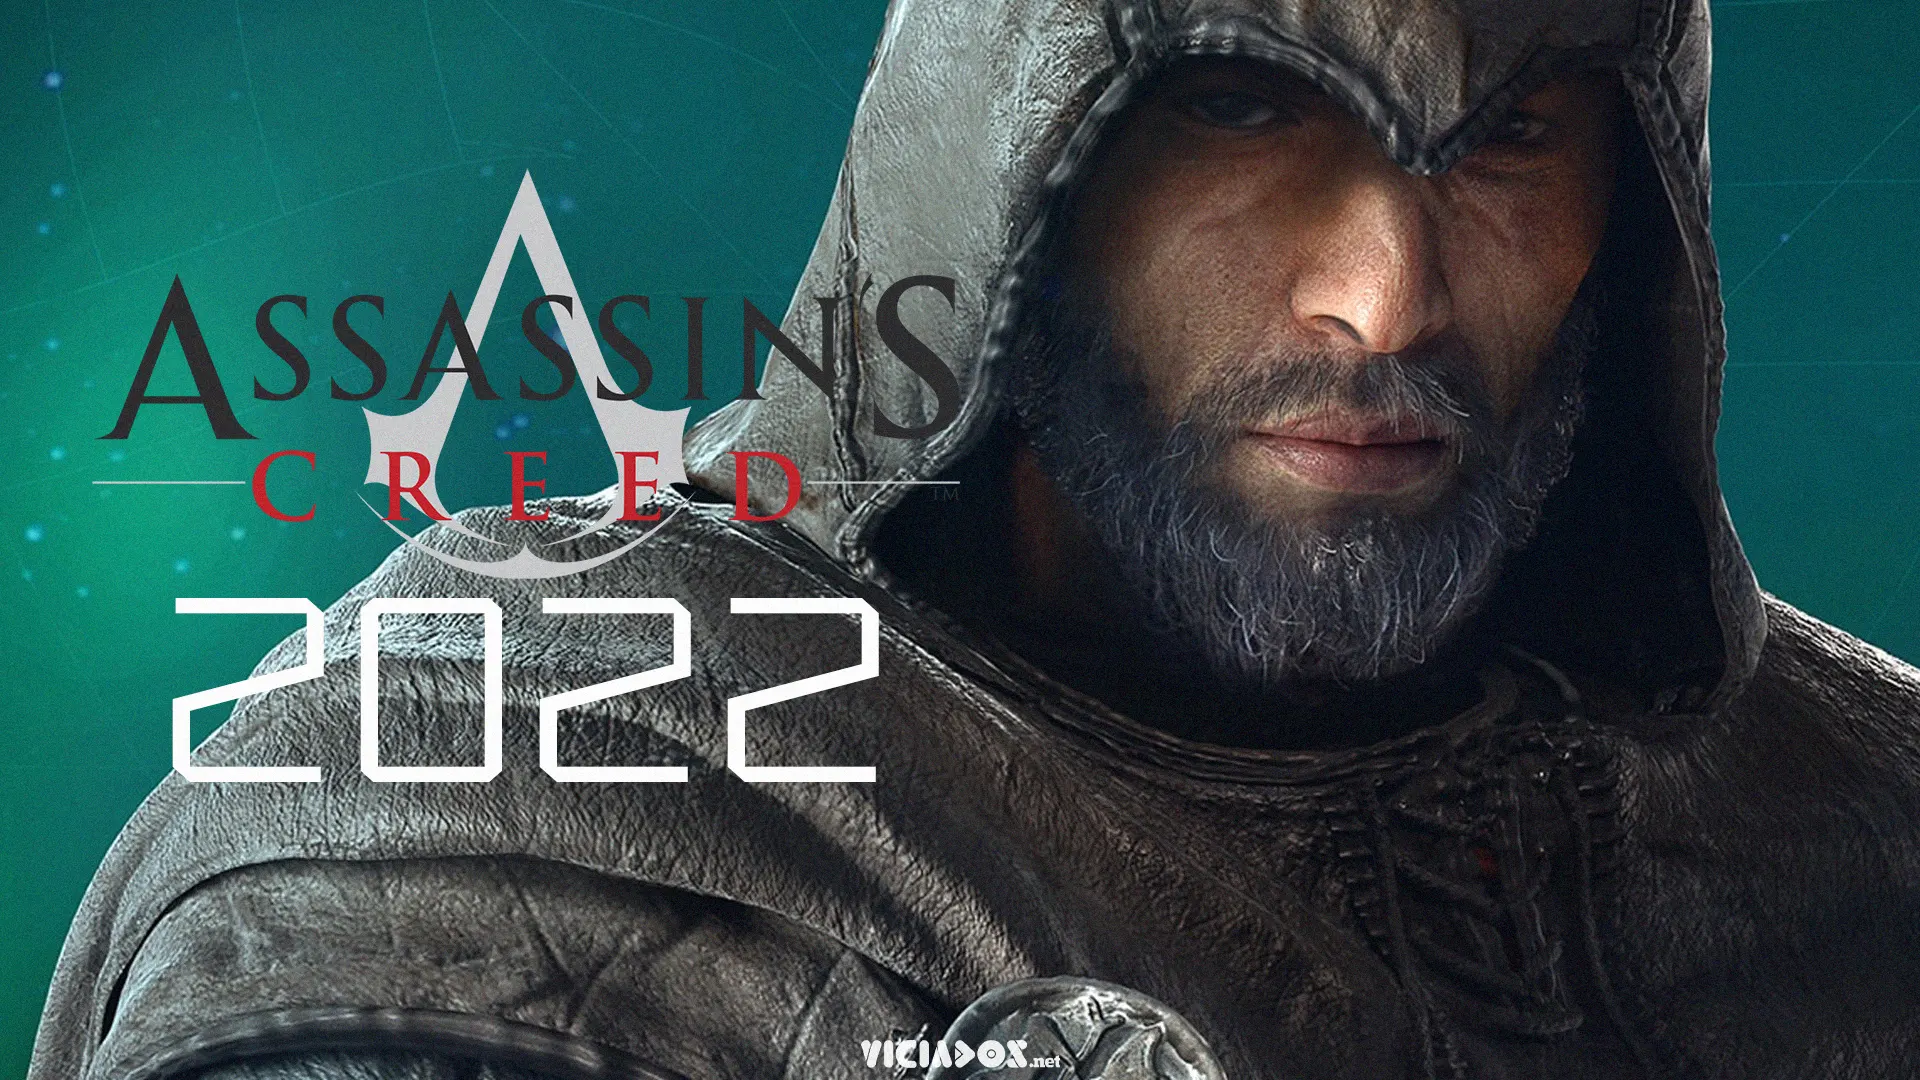 Assassin's Creed Rift ou Infinity? Ubisoft prepara grande anúncio nesta data! 1